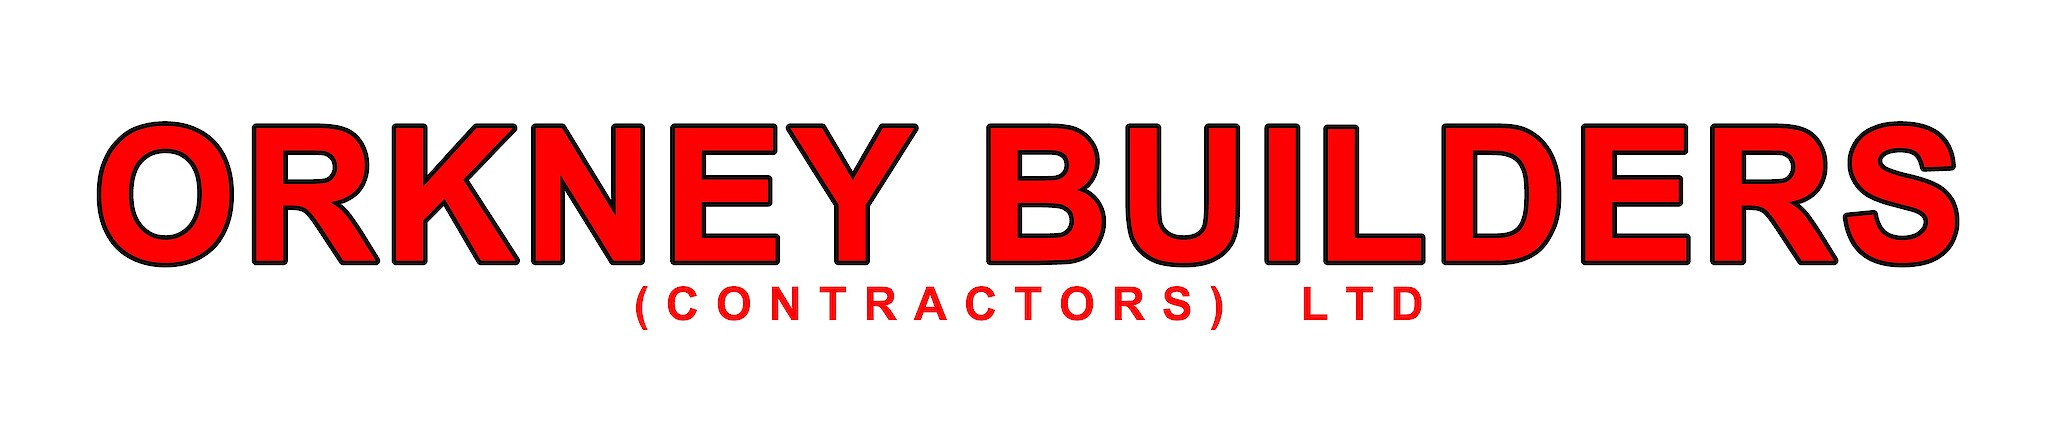 Orkney Builders (Contractors) Ltd Logo